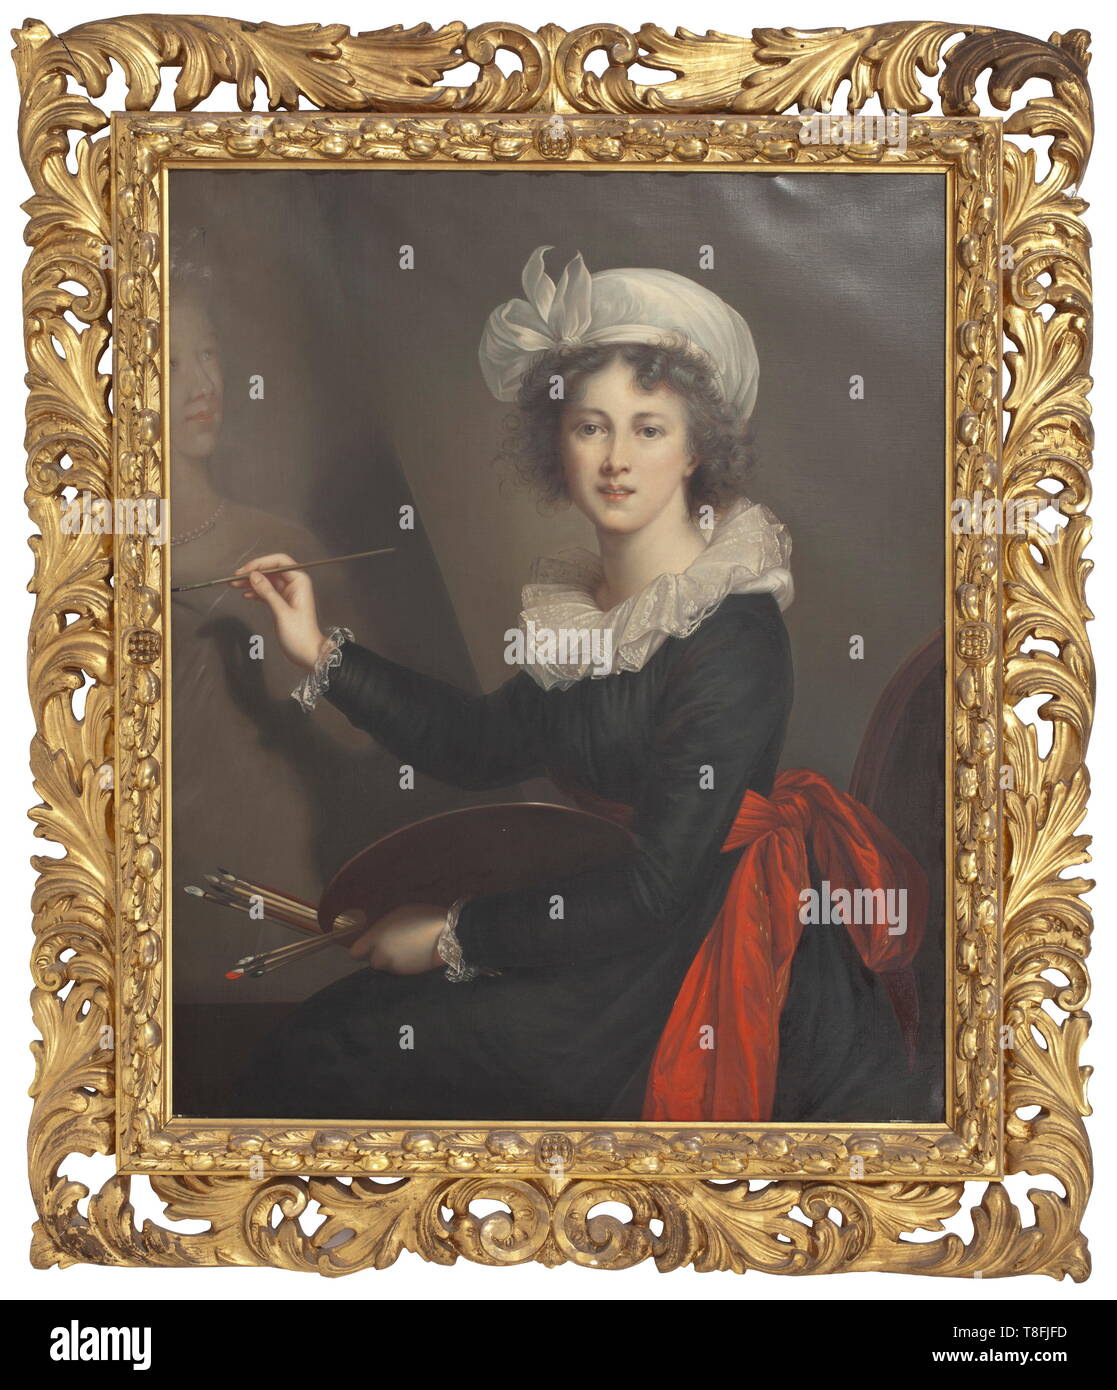 Elisabeth Vigée-Lebrun (1755 - 1842) - un autorretrato Óleo sobre lienzo, circa 1880/90. Autorretrato atmosférica en buena forma de pintura. En el reverso dos etiquetas de inventario. En un magnífico marco de yeso dorado (pequeños daños). Dimensiones de la pintura aproximadamente 100 x 82 cm, dimensiones del bastidor de 131 x 112 cm. Elisabeth Vigée-Lebrun, muy famoso pintor francés, quien pintó numerosos retratos de aristócratas europeos. Sus obras forman parte de colecciones privadas, así como de varias grandes europeo y estadounidense de los museos. Según t-Clearance-Info-Not-Available Additional-Rights Foto de stock